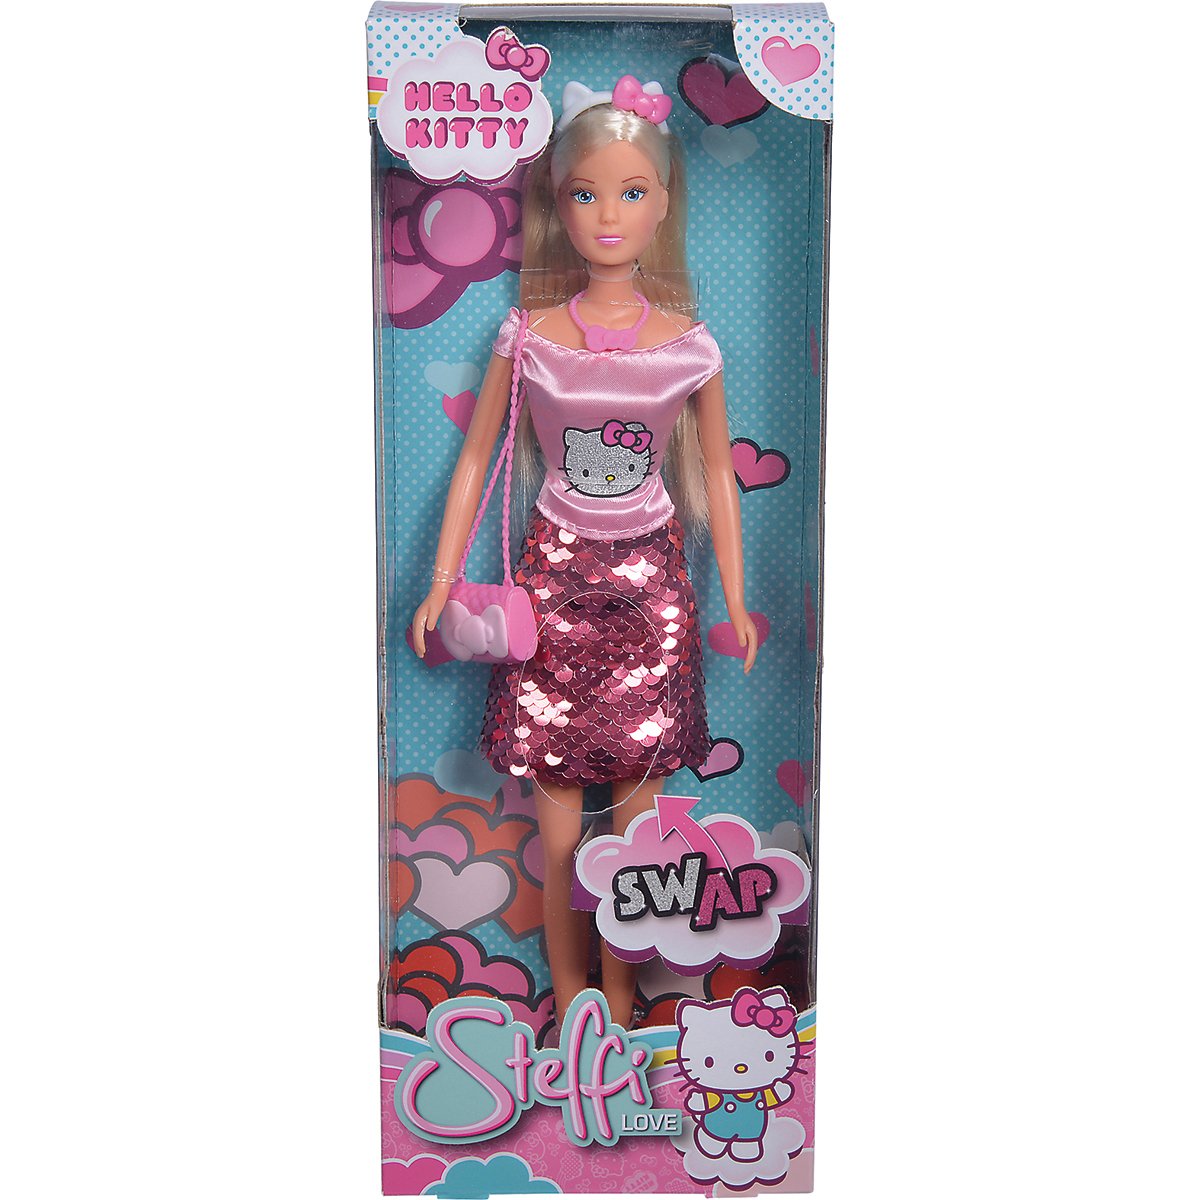 Poze Papusa Steffi Love cu rochita cu imprimeu Hello Kitty